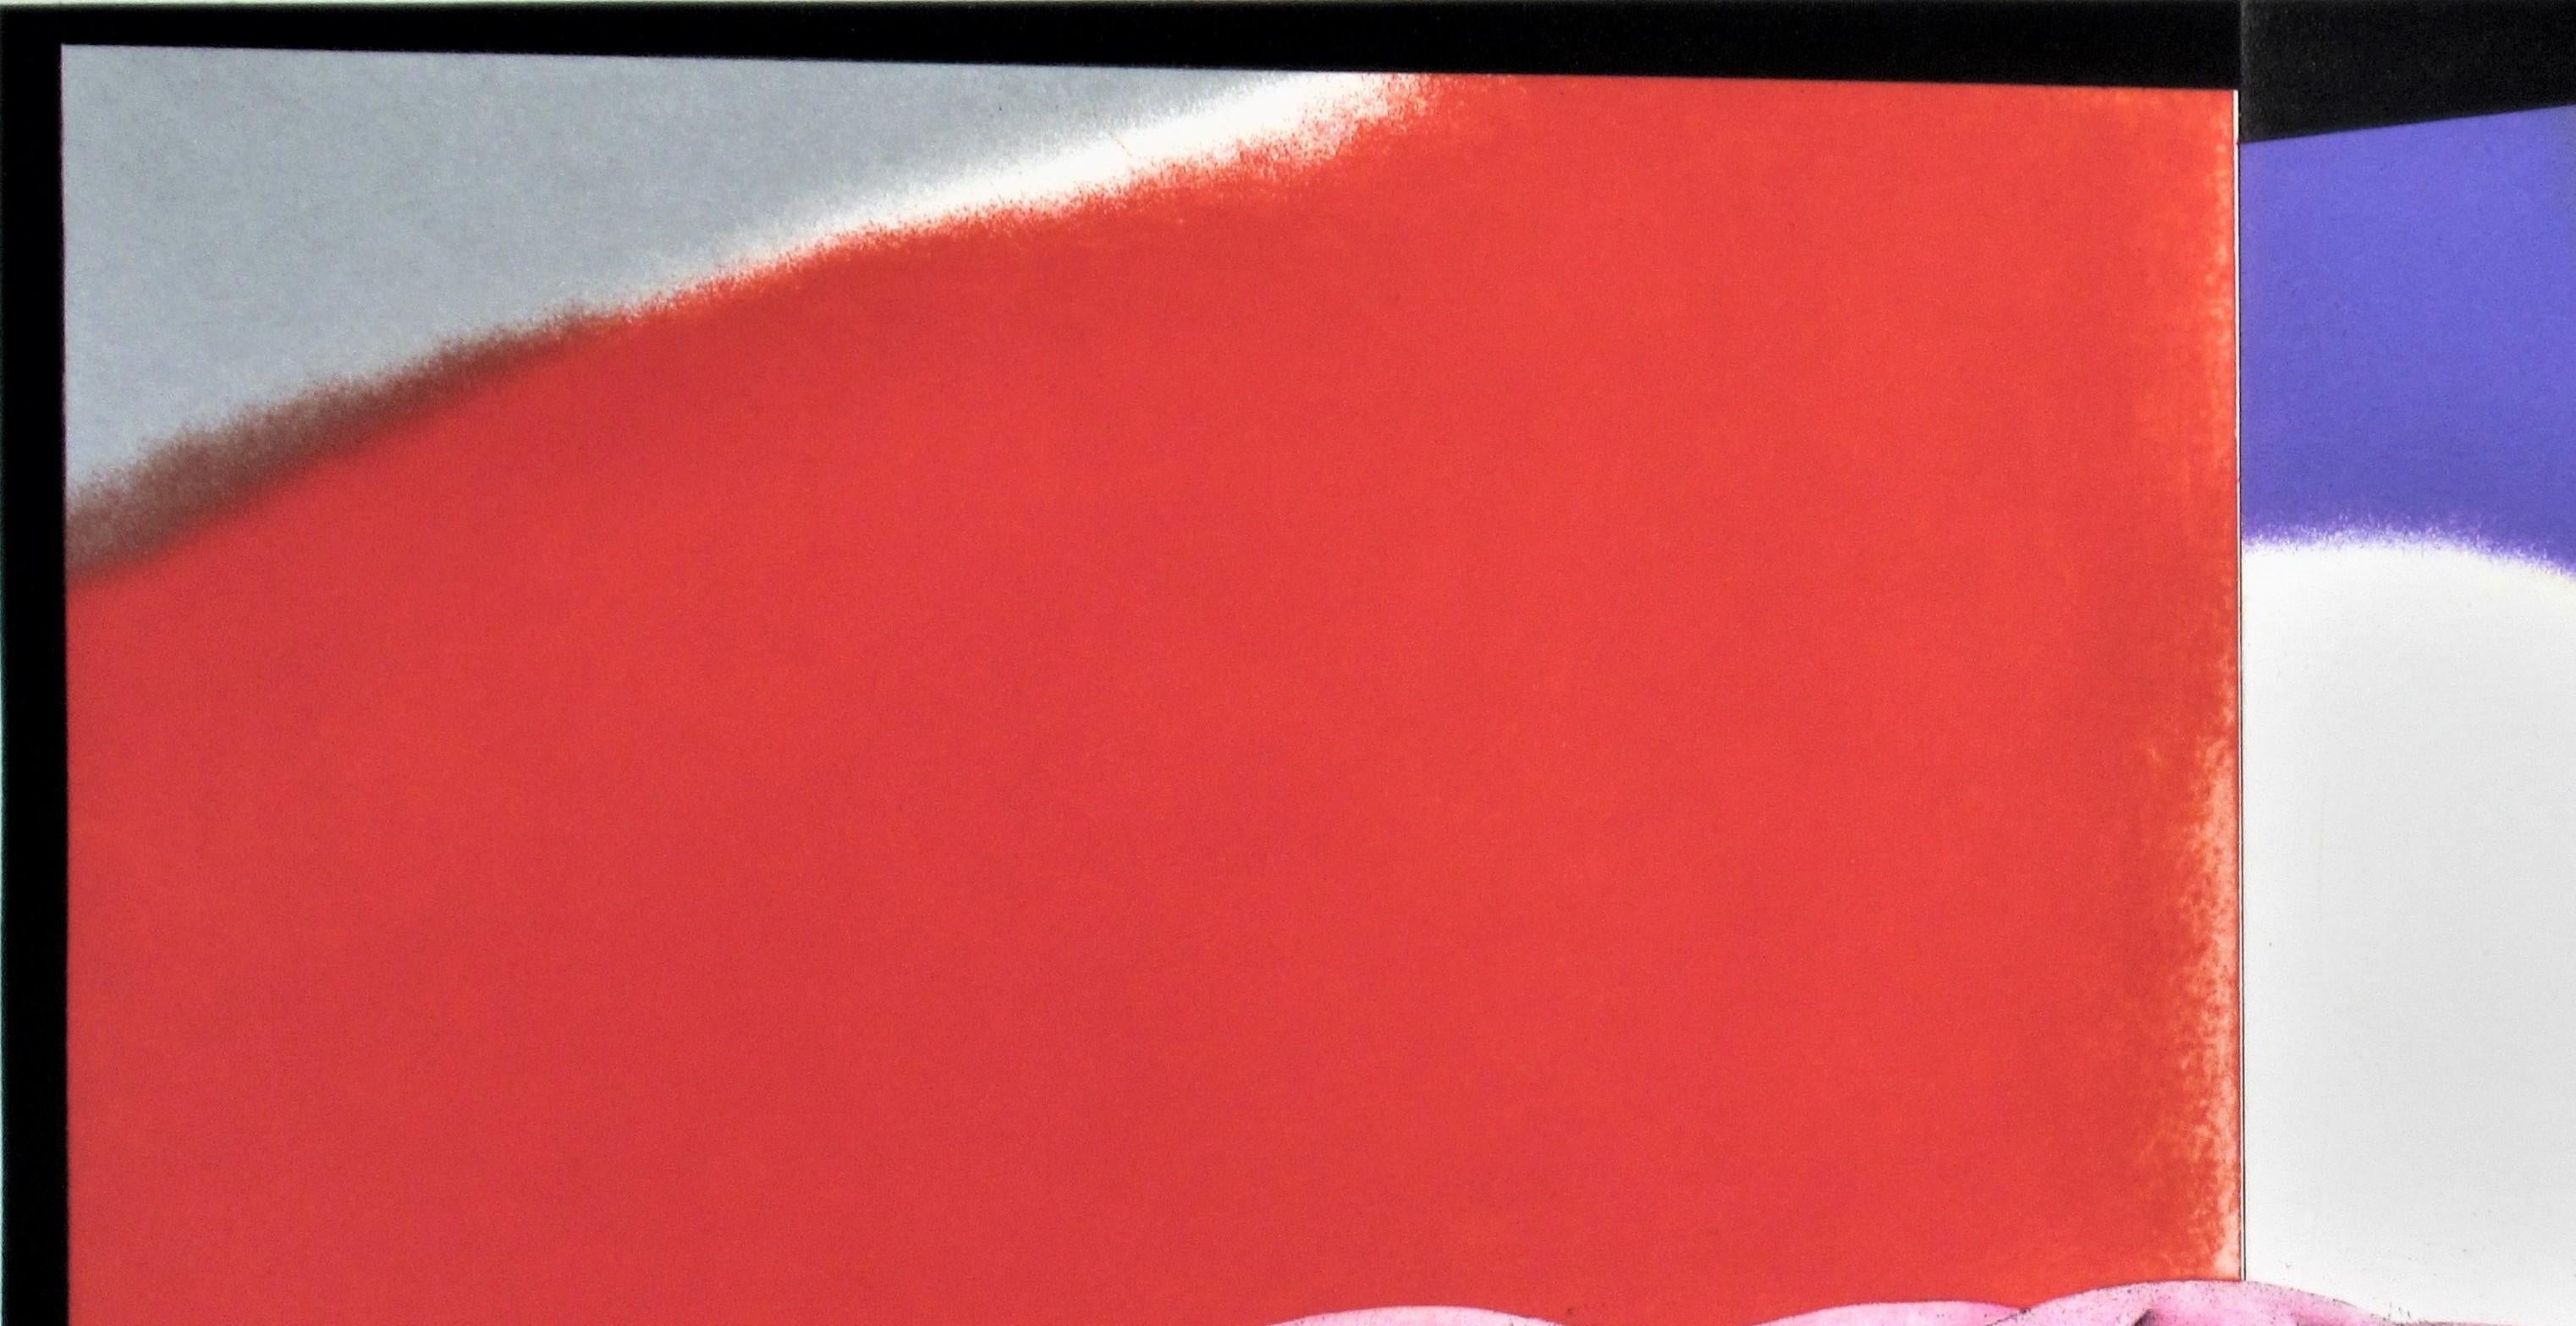 Künstler: Shigeki Kuroda  (Japaner, geb. 1943)
Titel: Rot Olent Rot
Jahr: um 1990
Medium: Radierung mit weichem Grund und Aquatinta
Papier: Nippon-Papier mit Wasserzeichen
Bildgröße (Plattenmarkierung): 14 x 23 Zoll
Blattgröße: 20,5 x 30